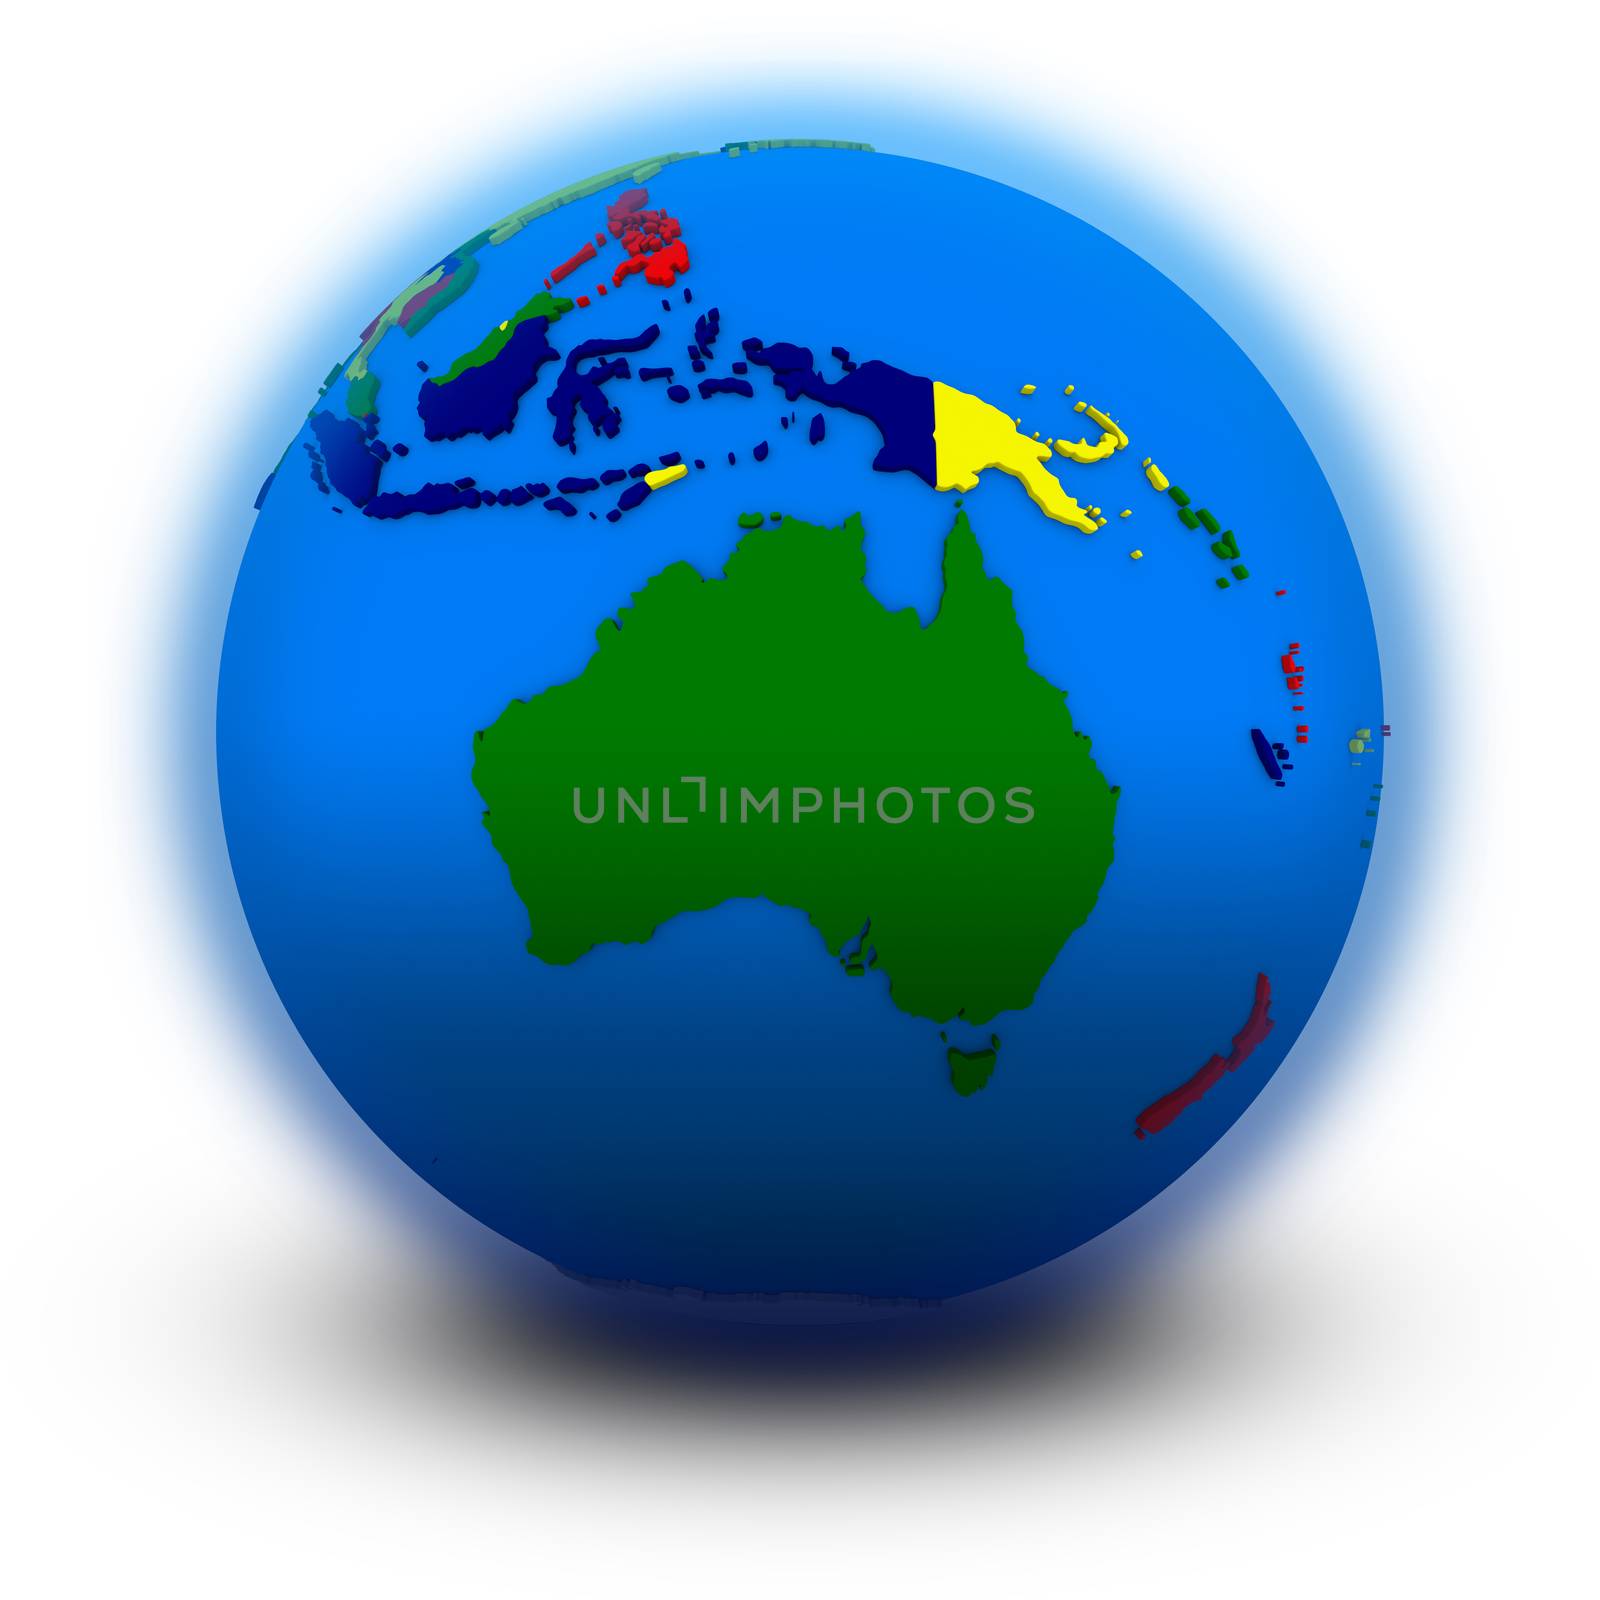 Australia on political globe, illustration isolated on white background